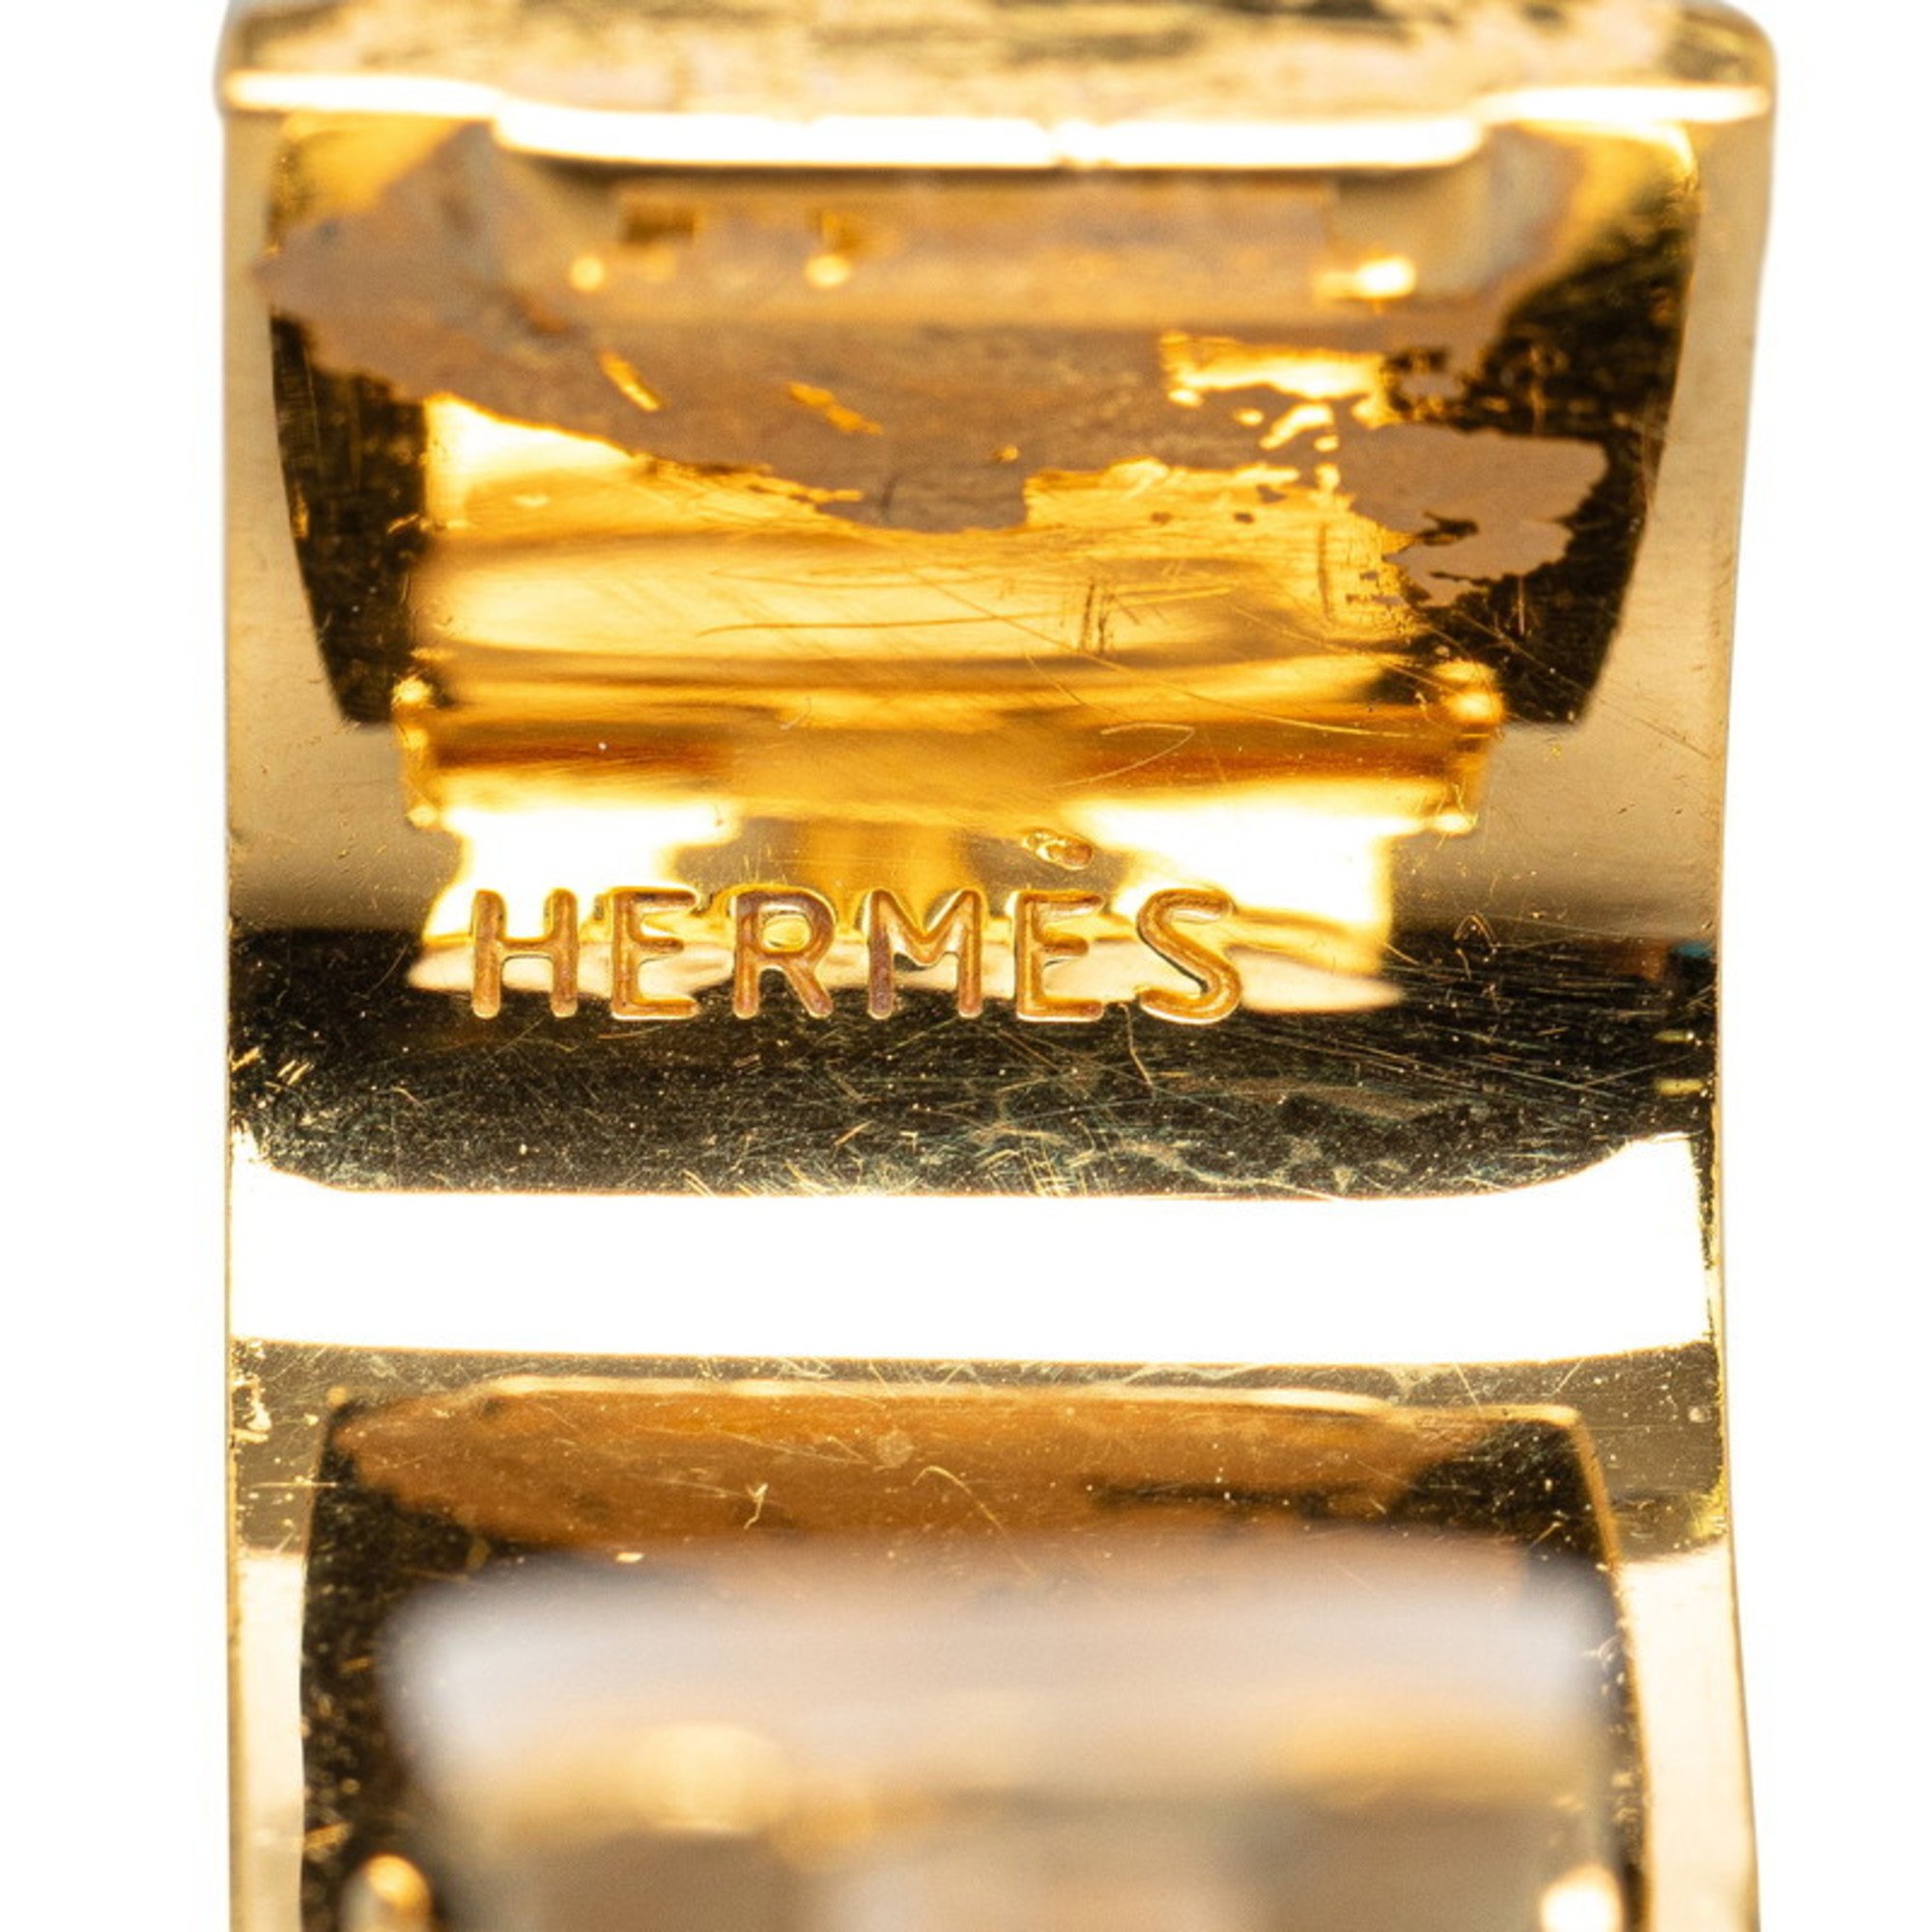 Hermes enamel cloisonné earrings orange gold plated women's HERMES